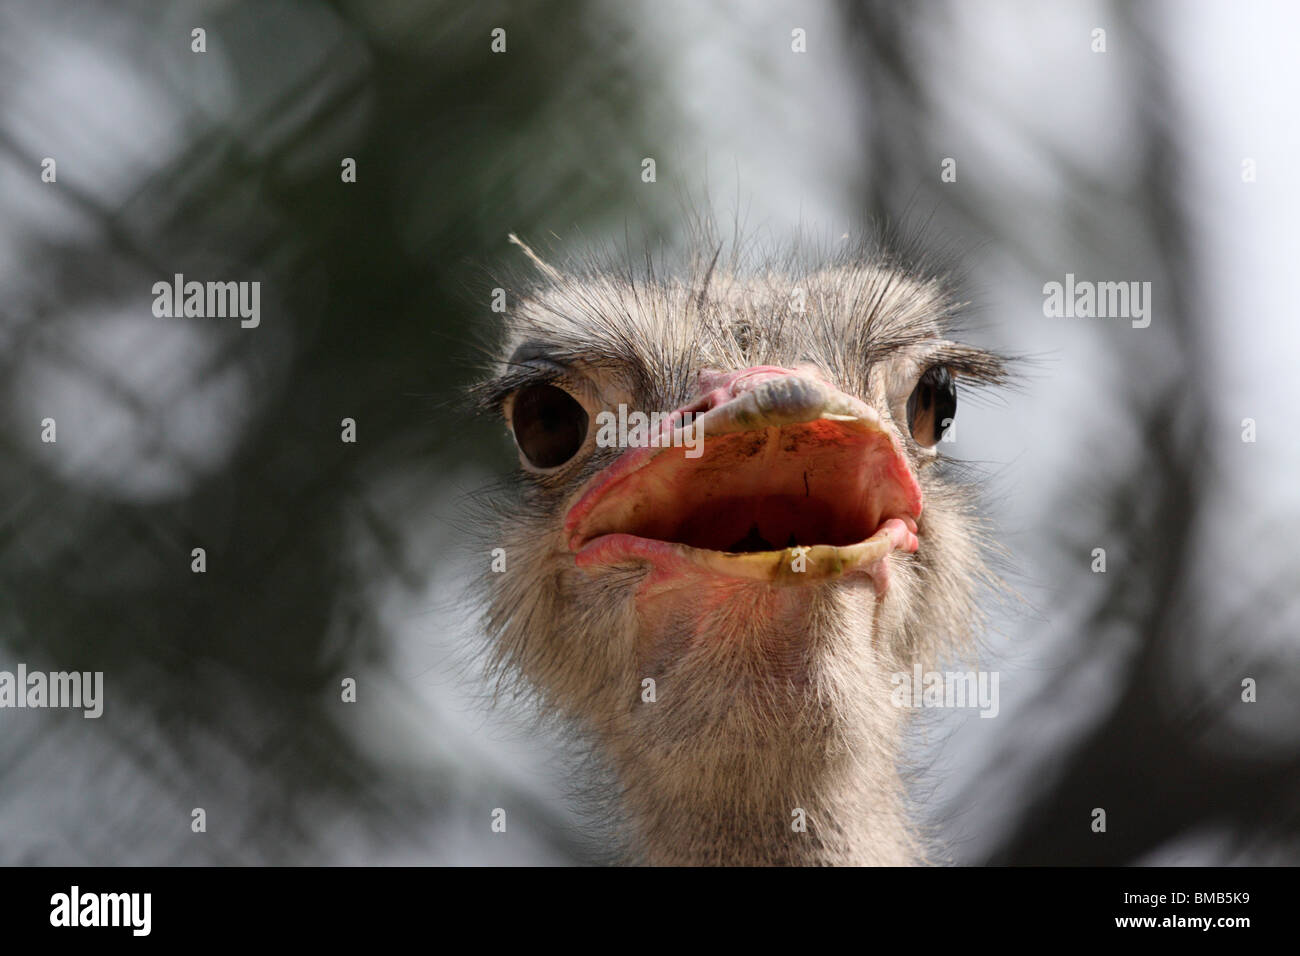 head shot of an ostrich Stock Photo